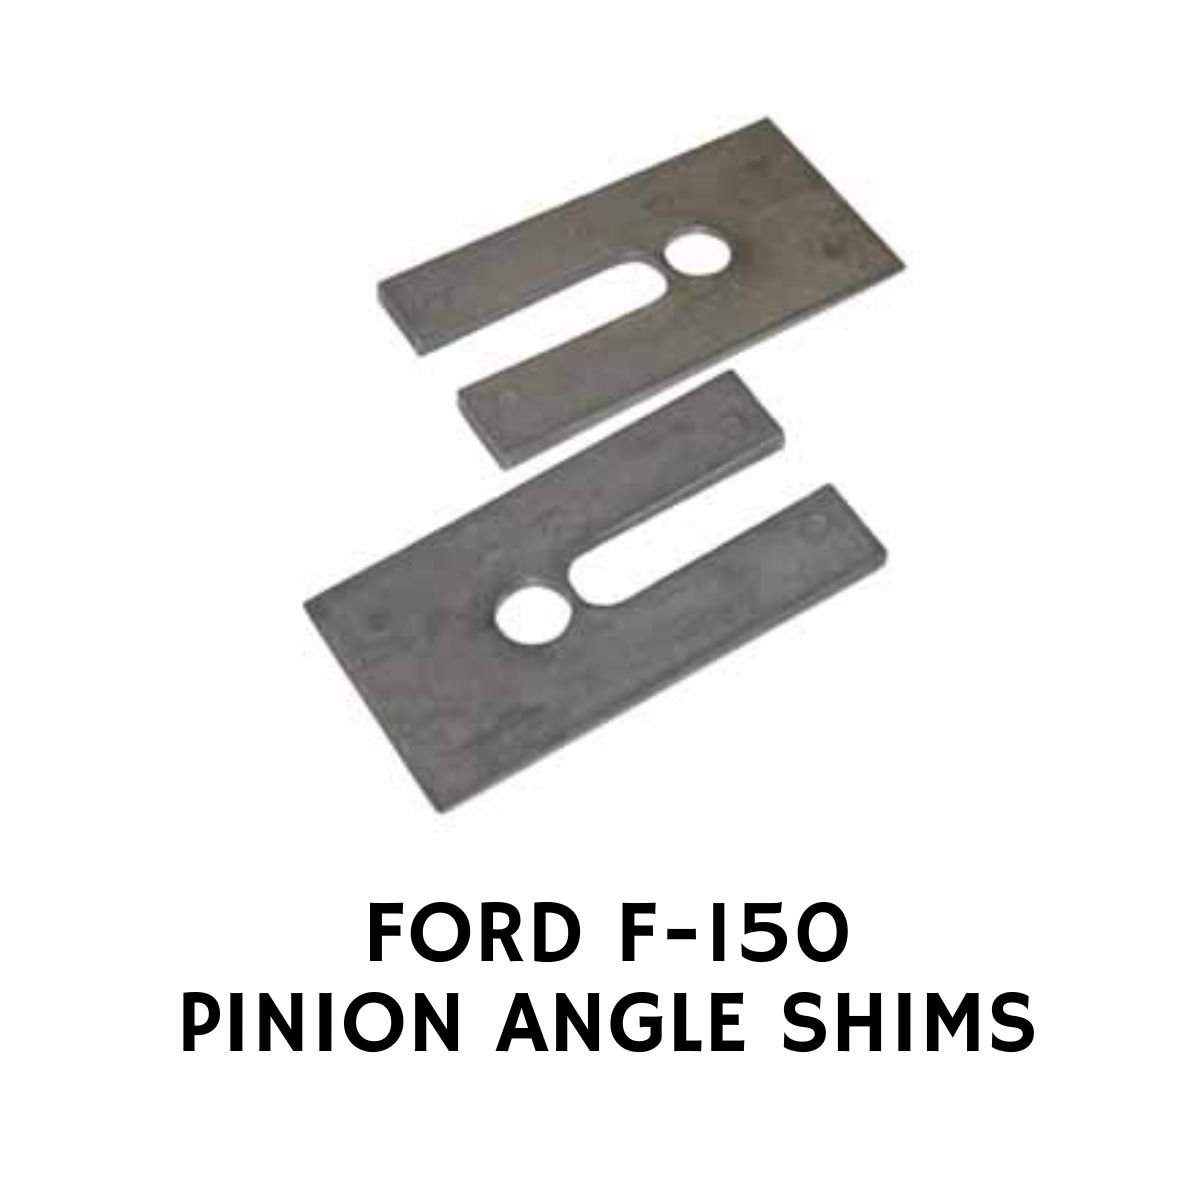 FORD F-150 PINION ANGLE SHIMS